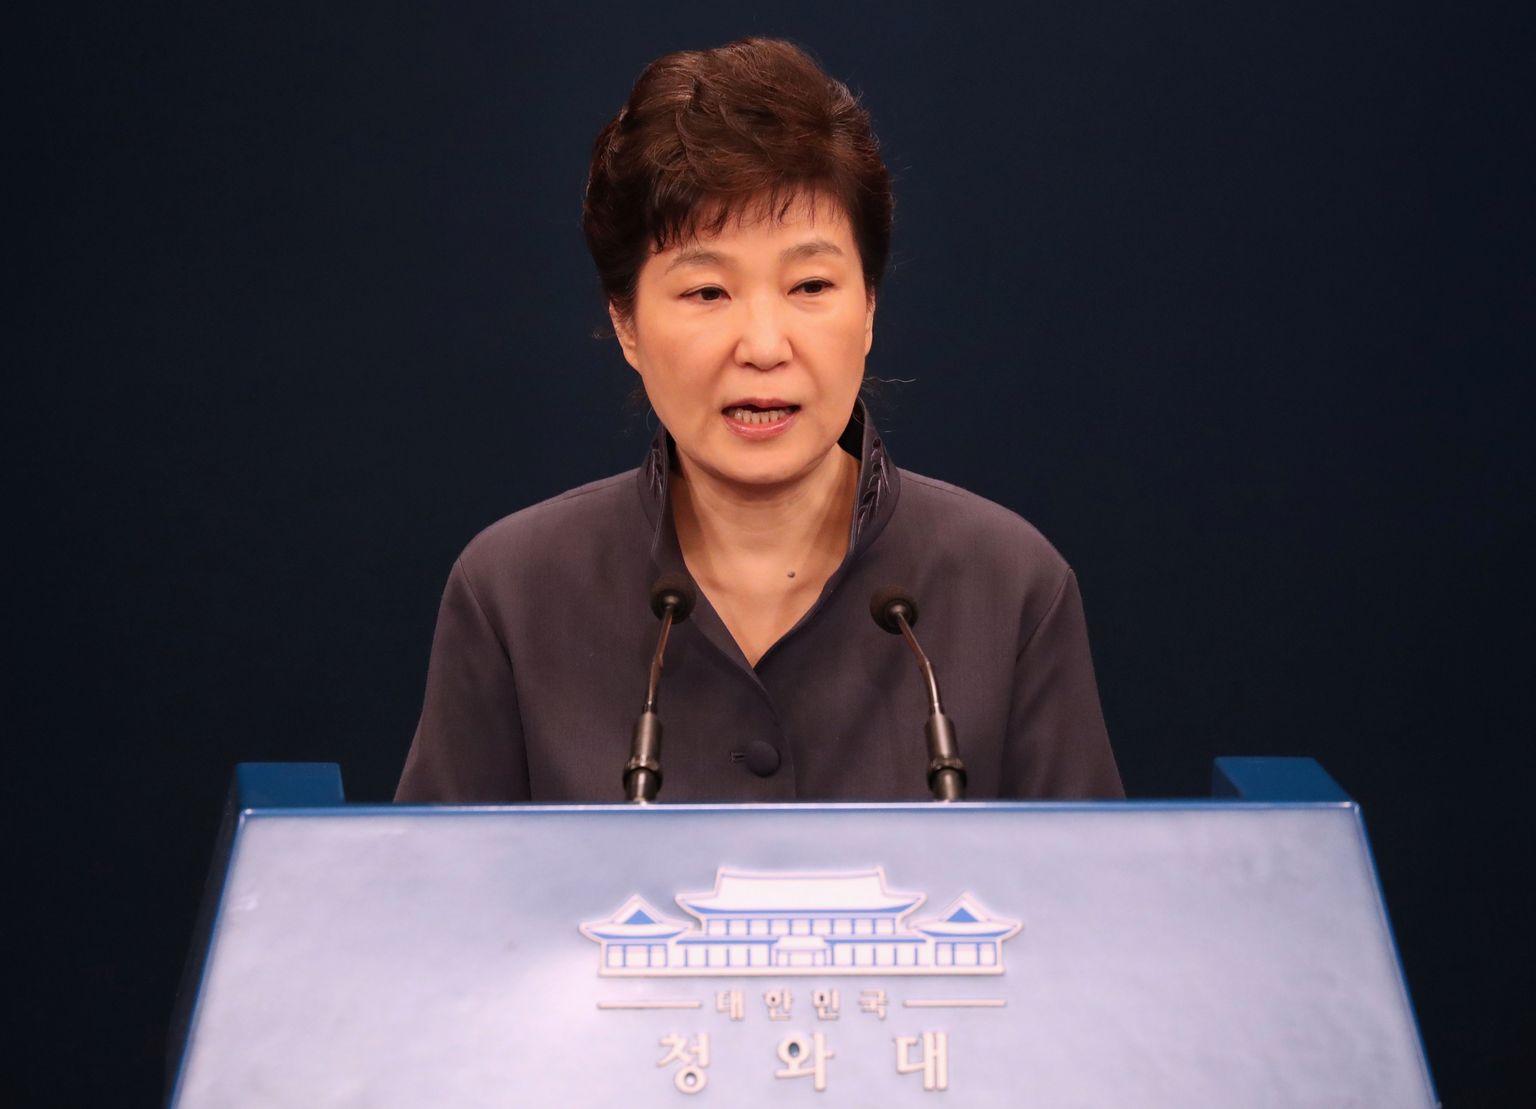 Lõuna-Korea president Park Geun-hye.